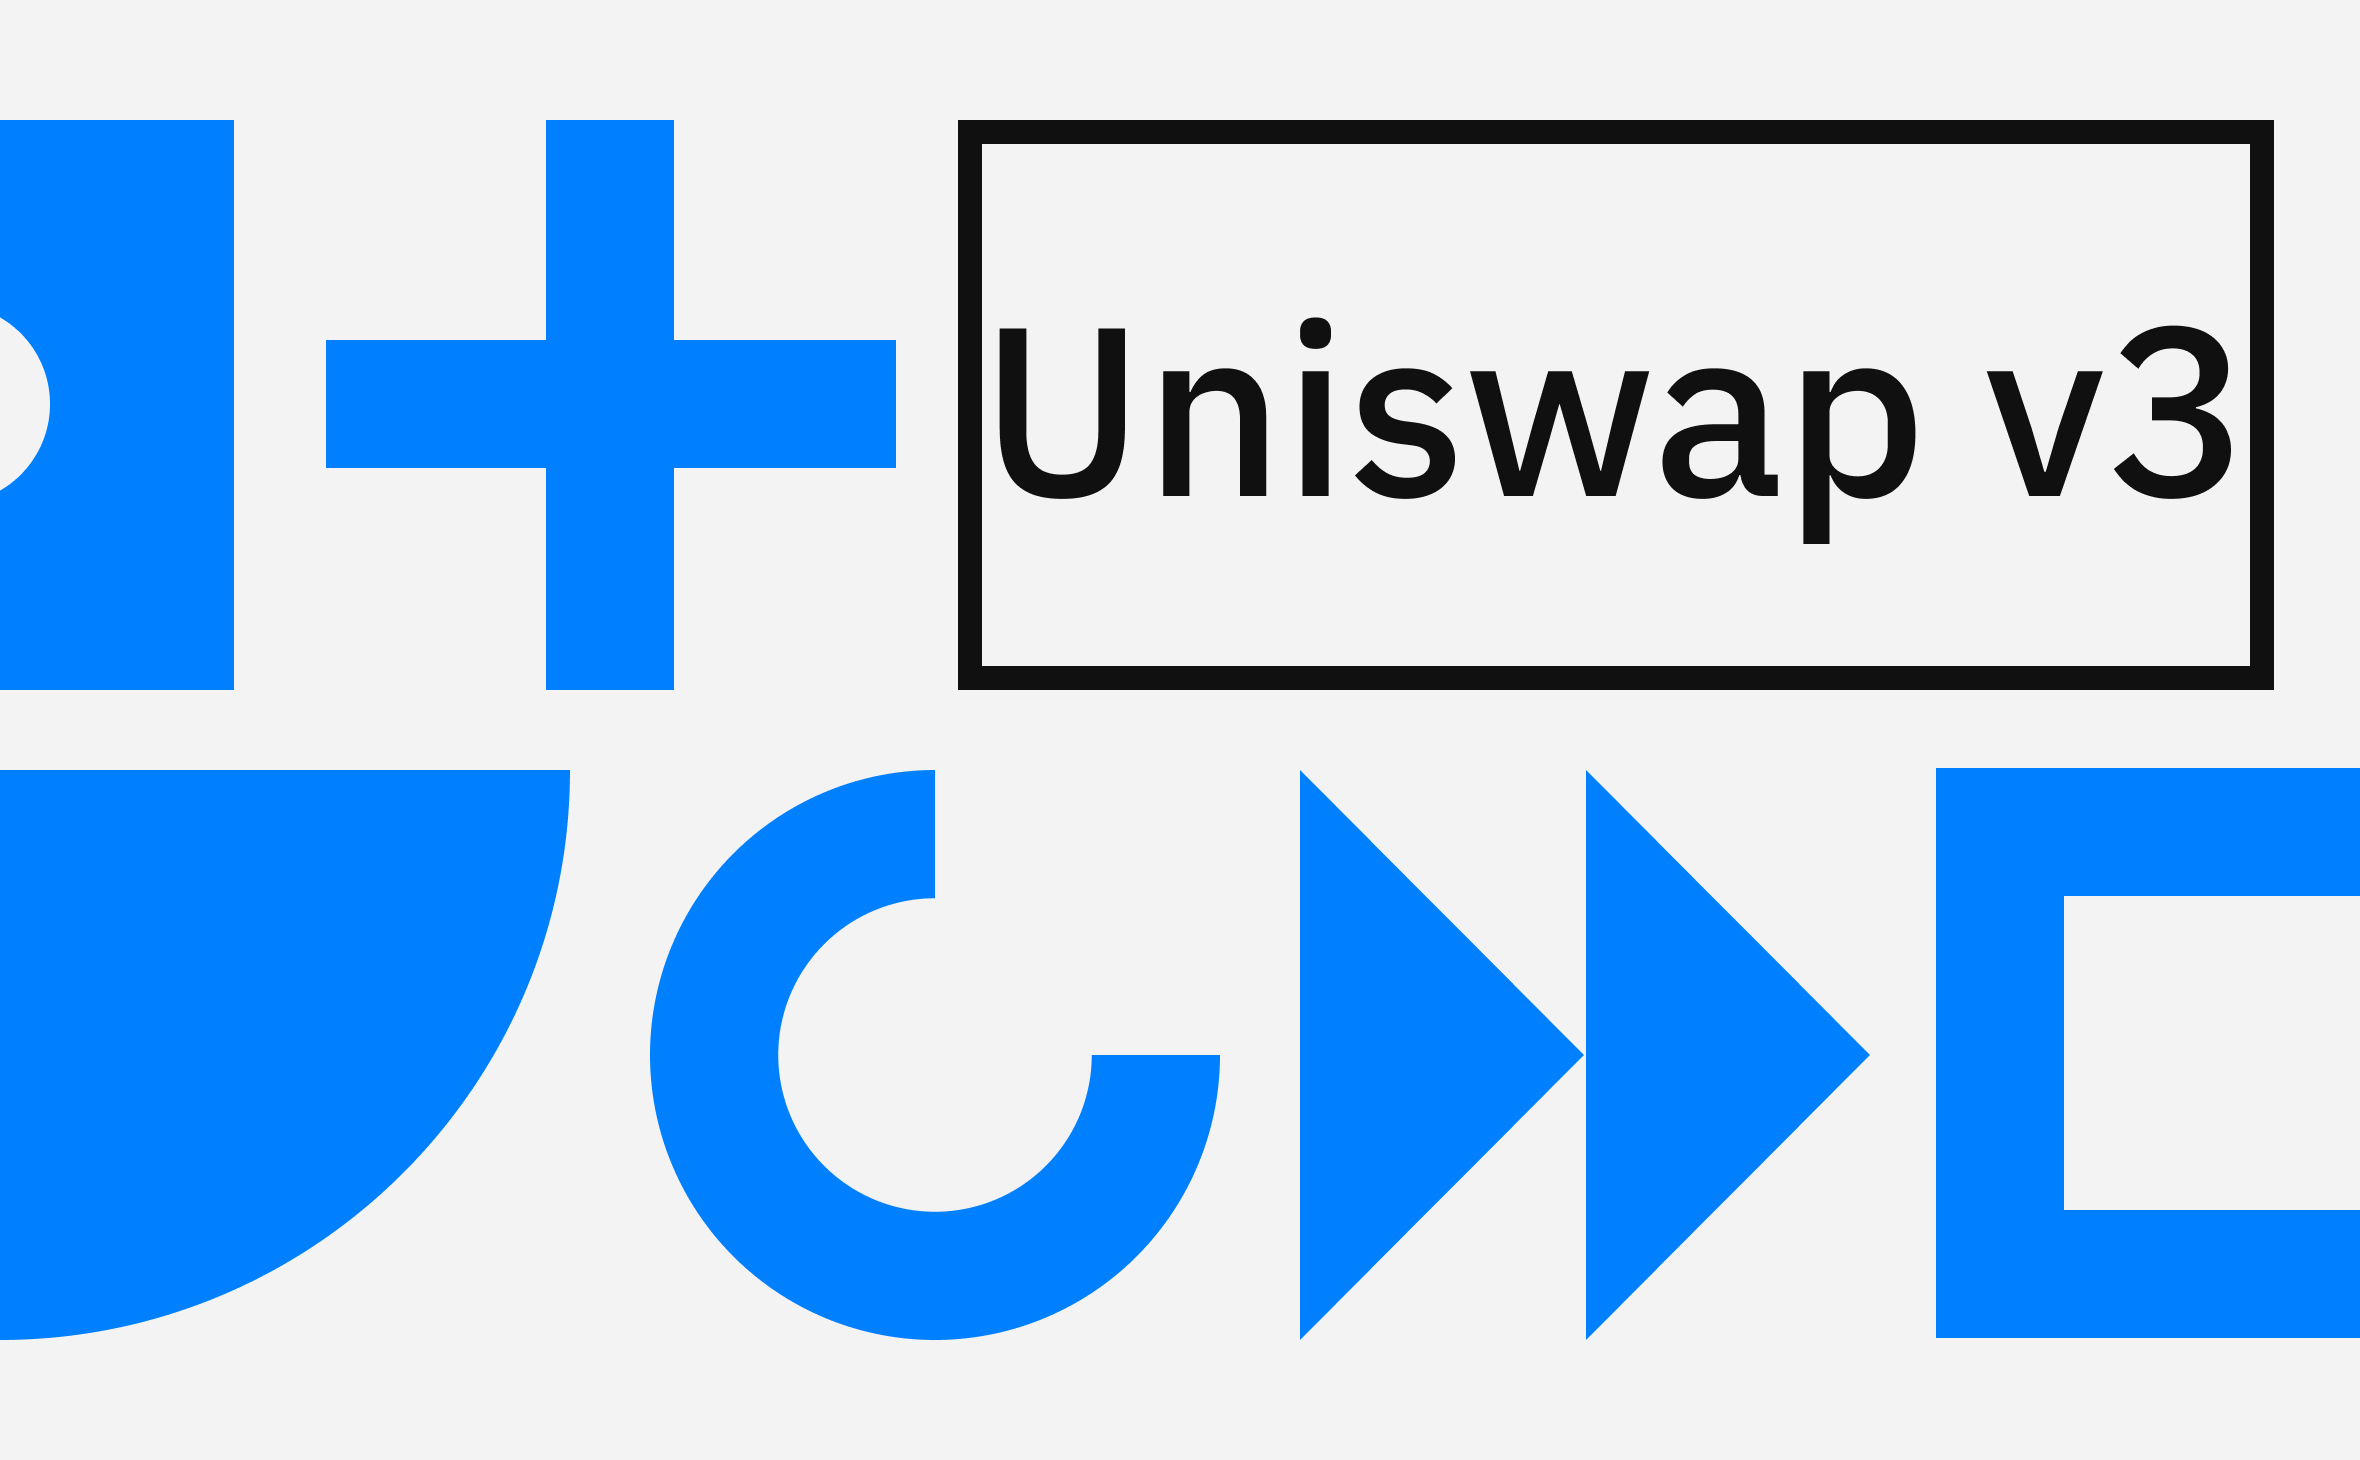 Третья версия. Как доступ к коду платформы Uniswap изменил рынок DeFi